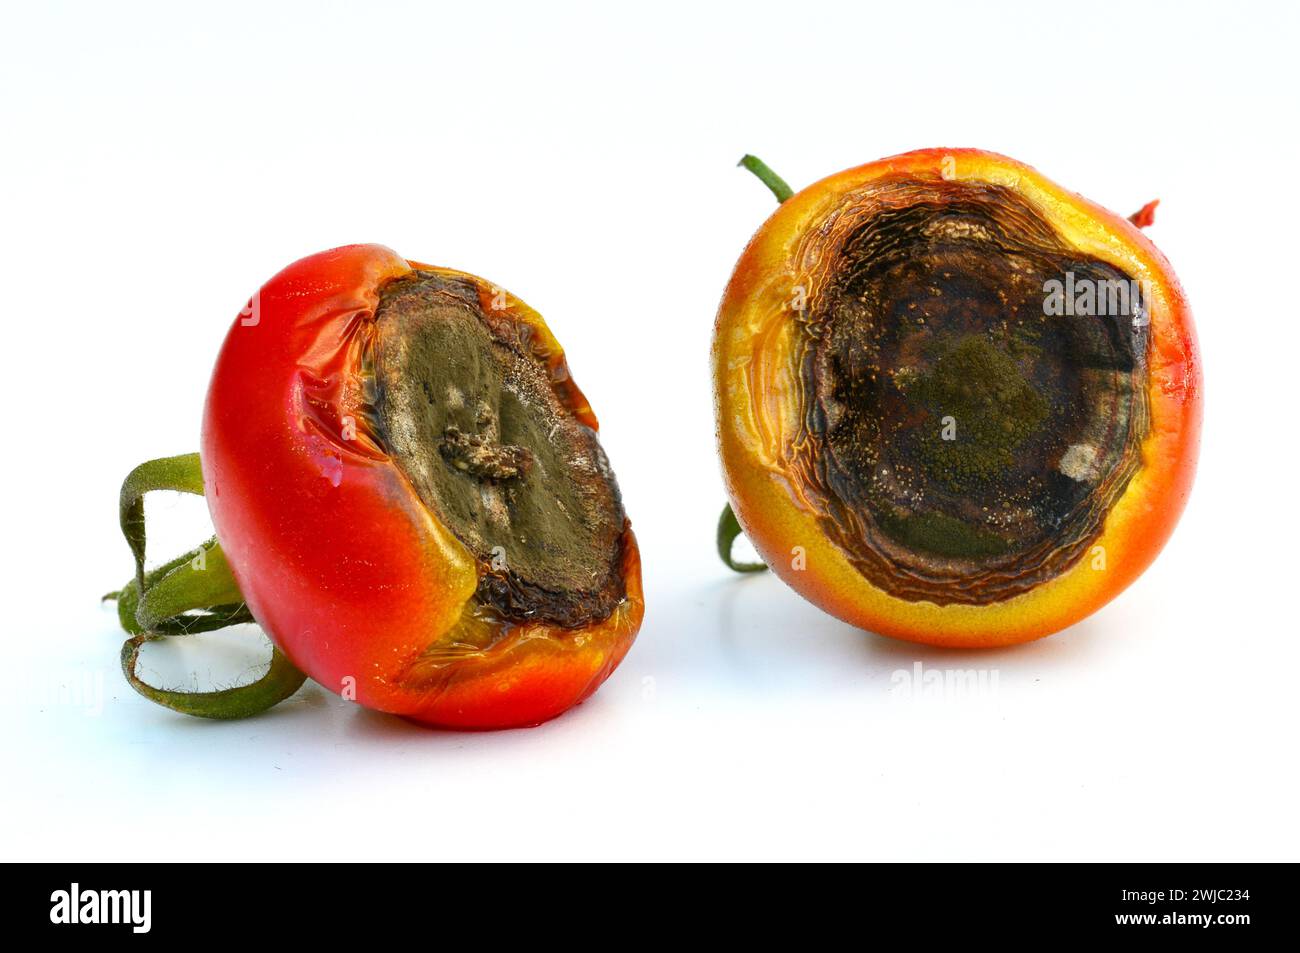 Tomatenfrucht durch geschwärzte Früchte beeinflußt Ende - aufgrund der Blütenendfäule, die einen Kalziummangel signalisiert. Stockfoto